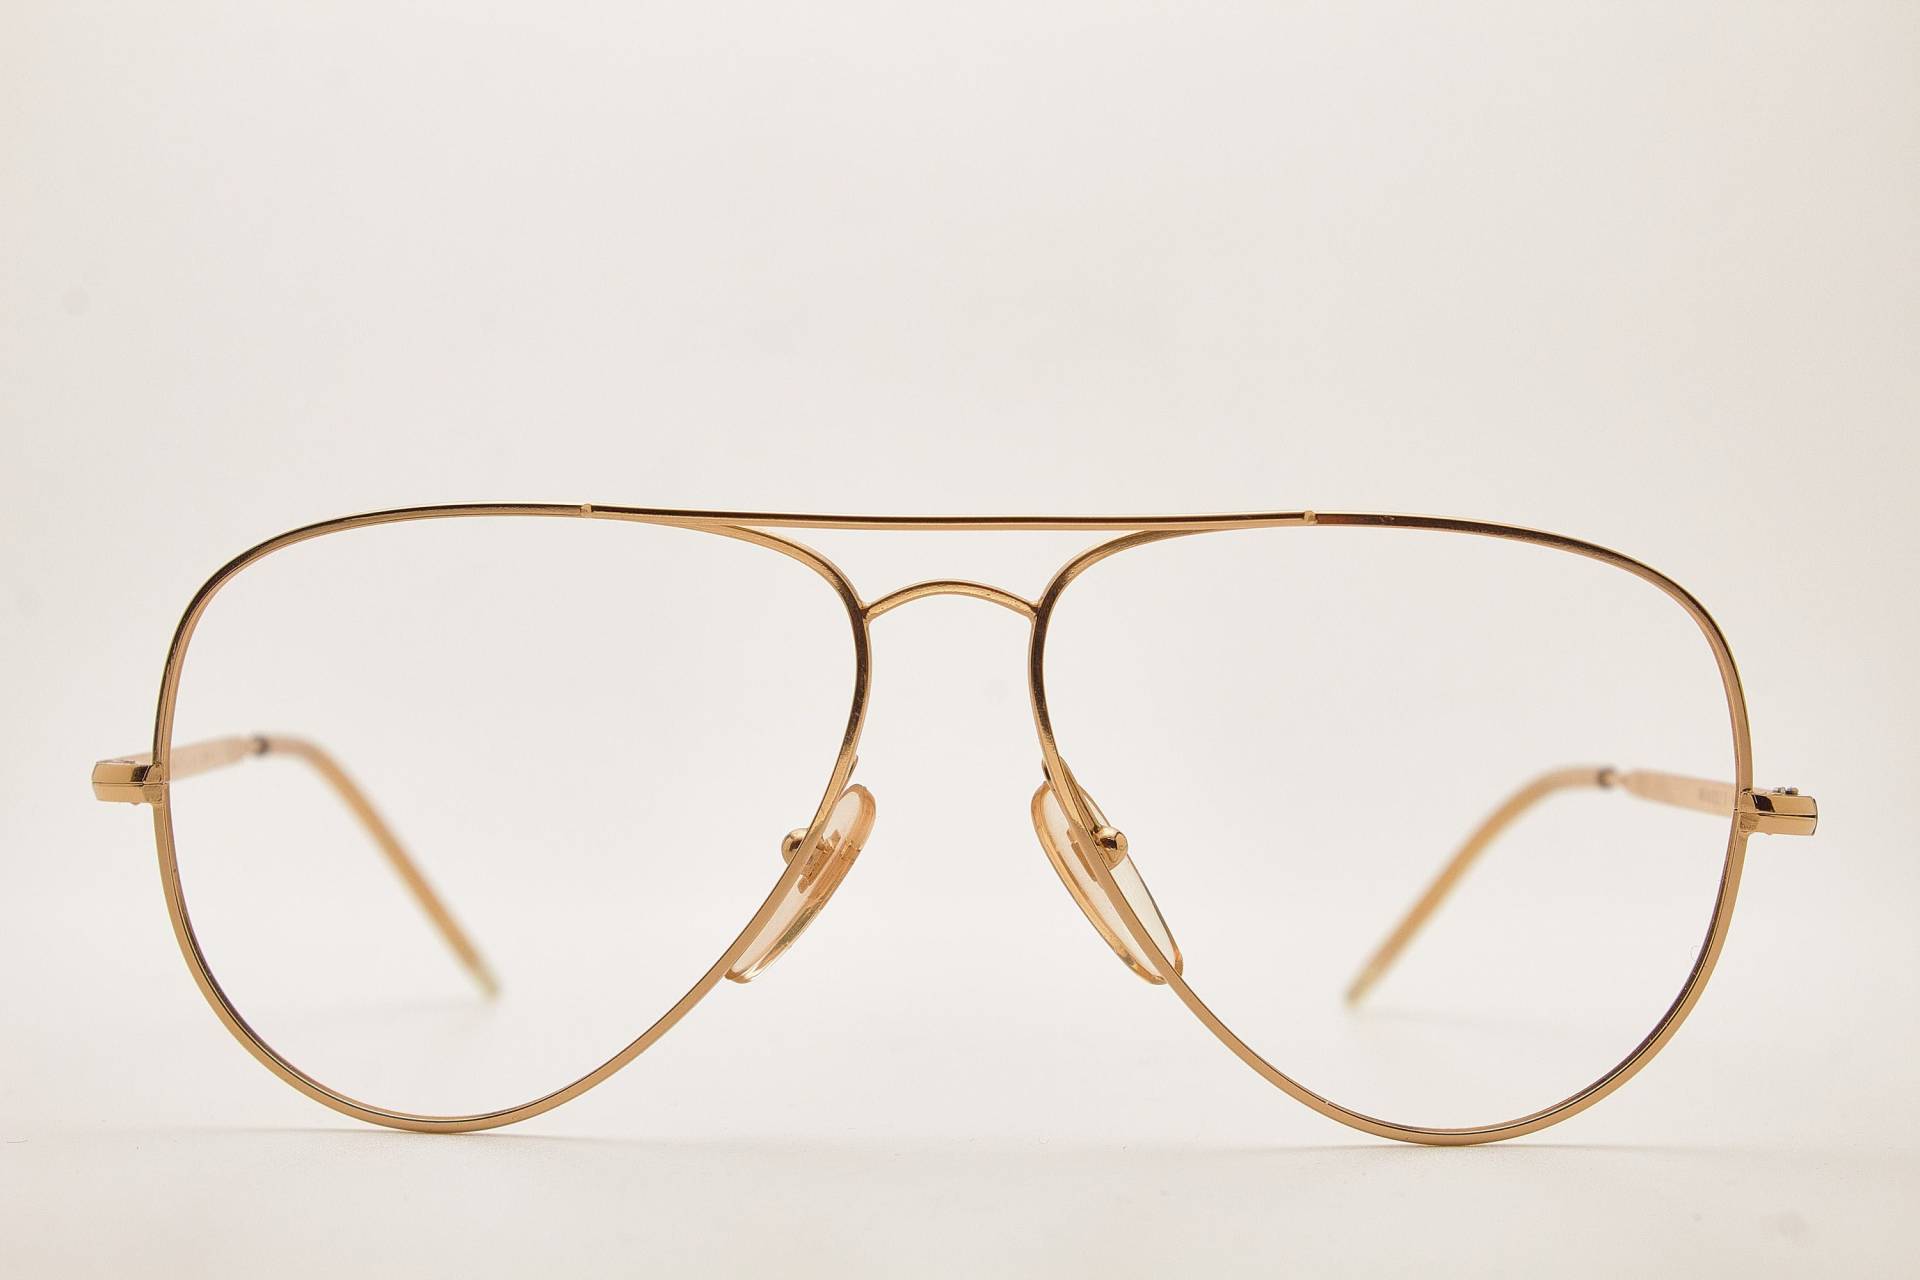 Grasset Vintage Brille Mirage Gold Rahmen, Vintage Brillen 1980Er Jahre, Aviator Brille, Oversize Sonnenbrille, Pilotensonnenbrille, 80Er von VintageGlassesVault